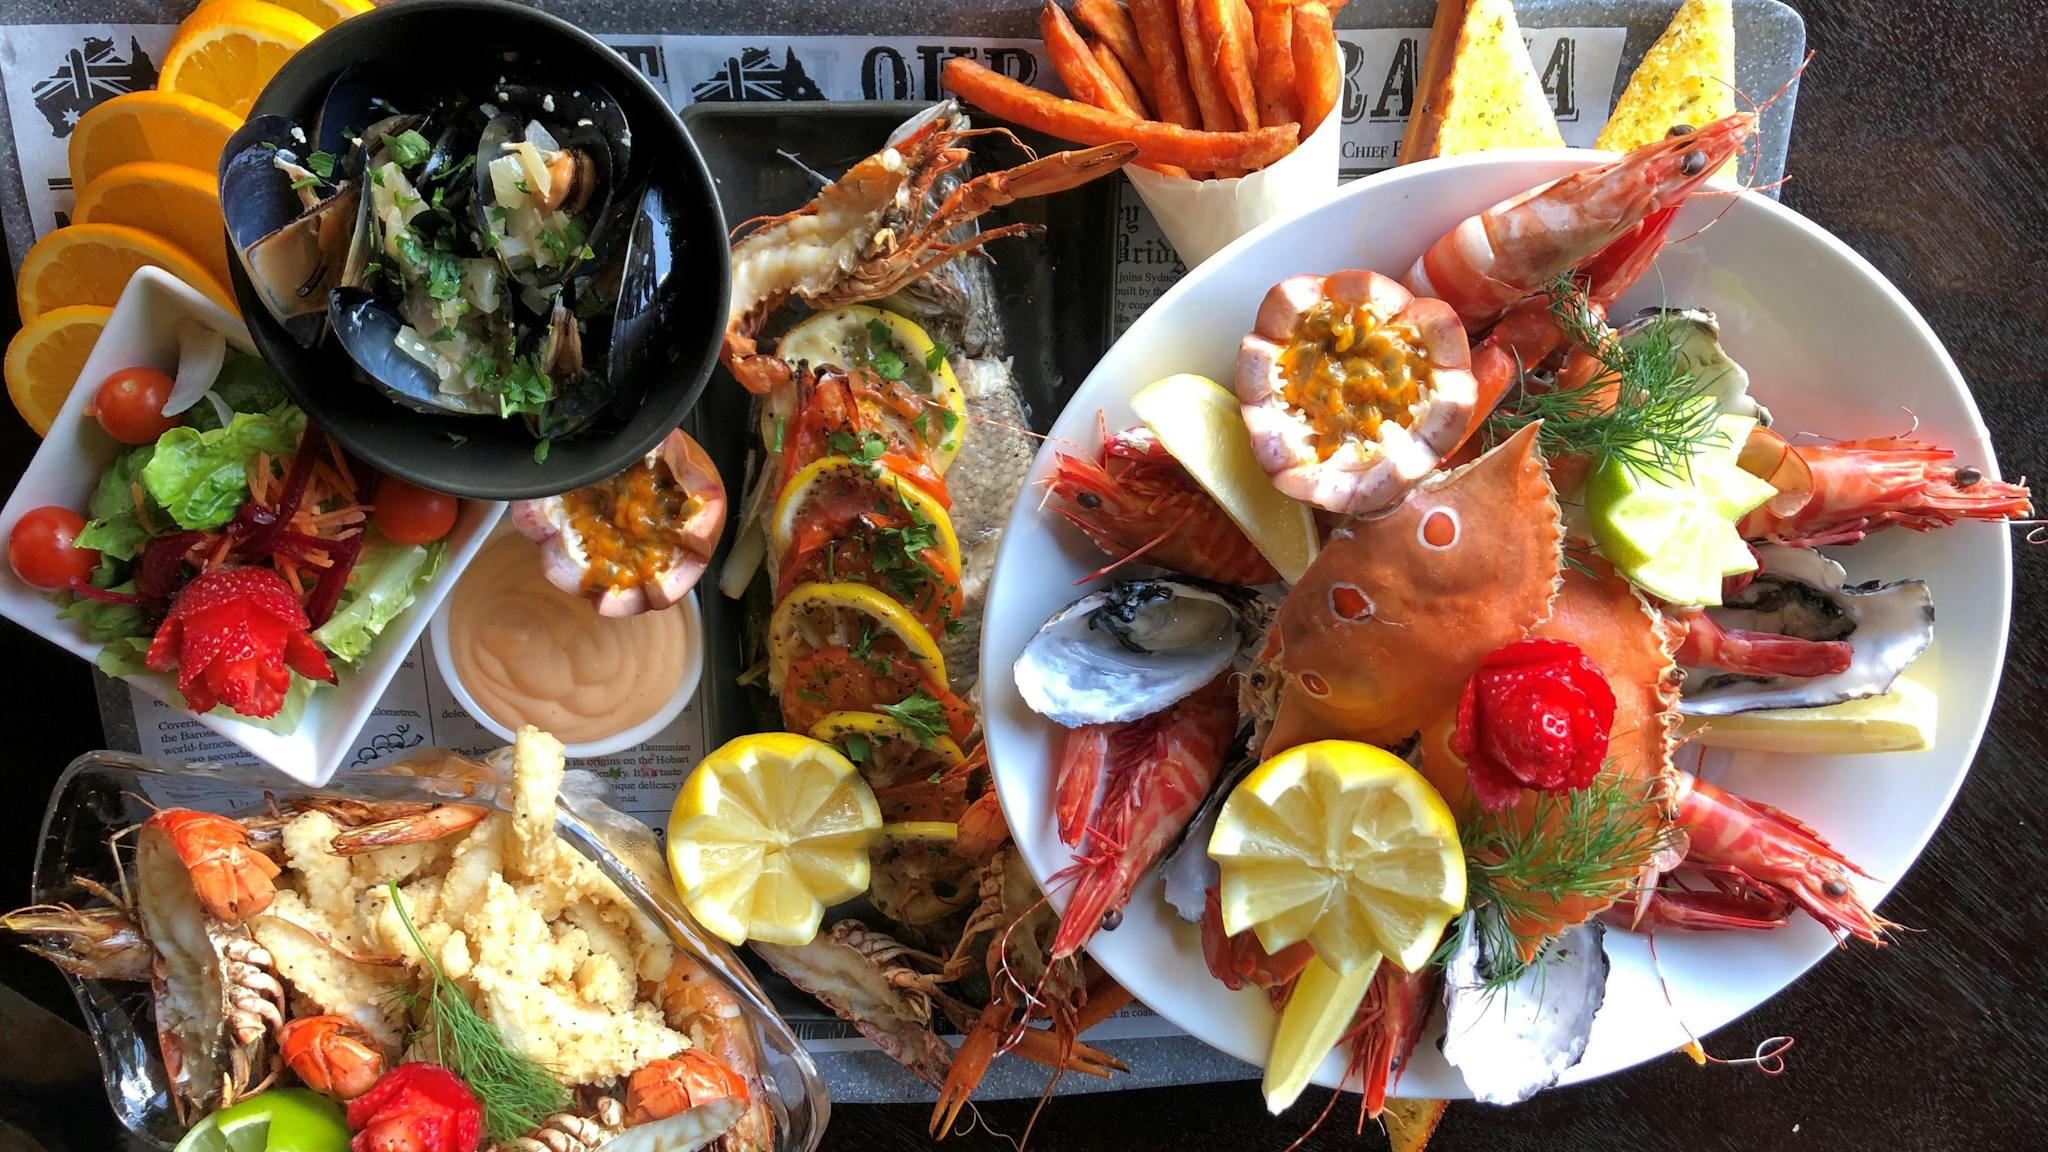 Crab, prawns, calamari and fish